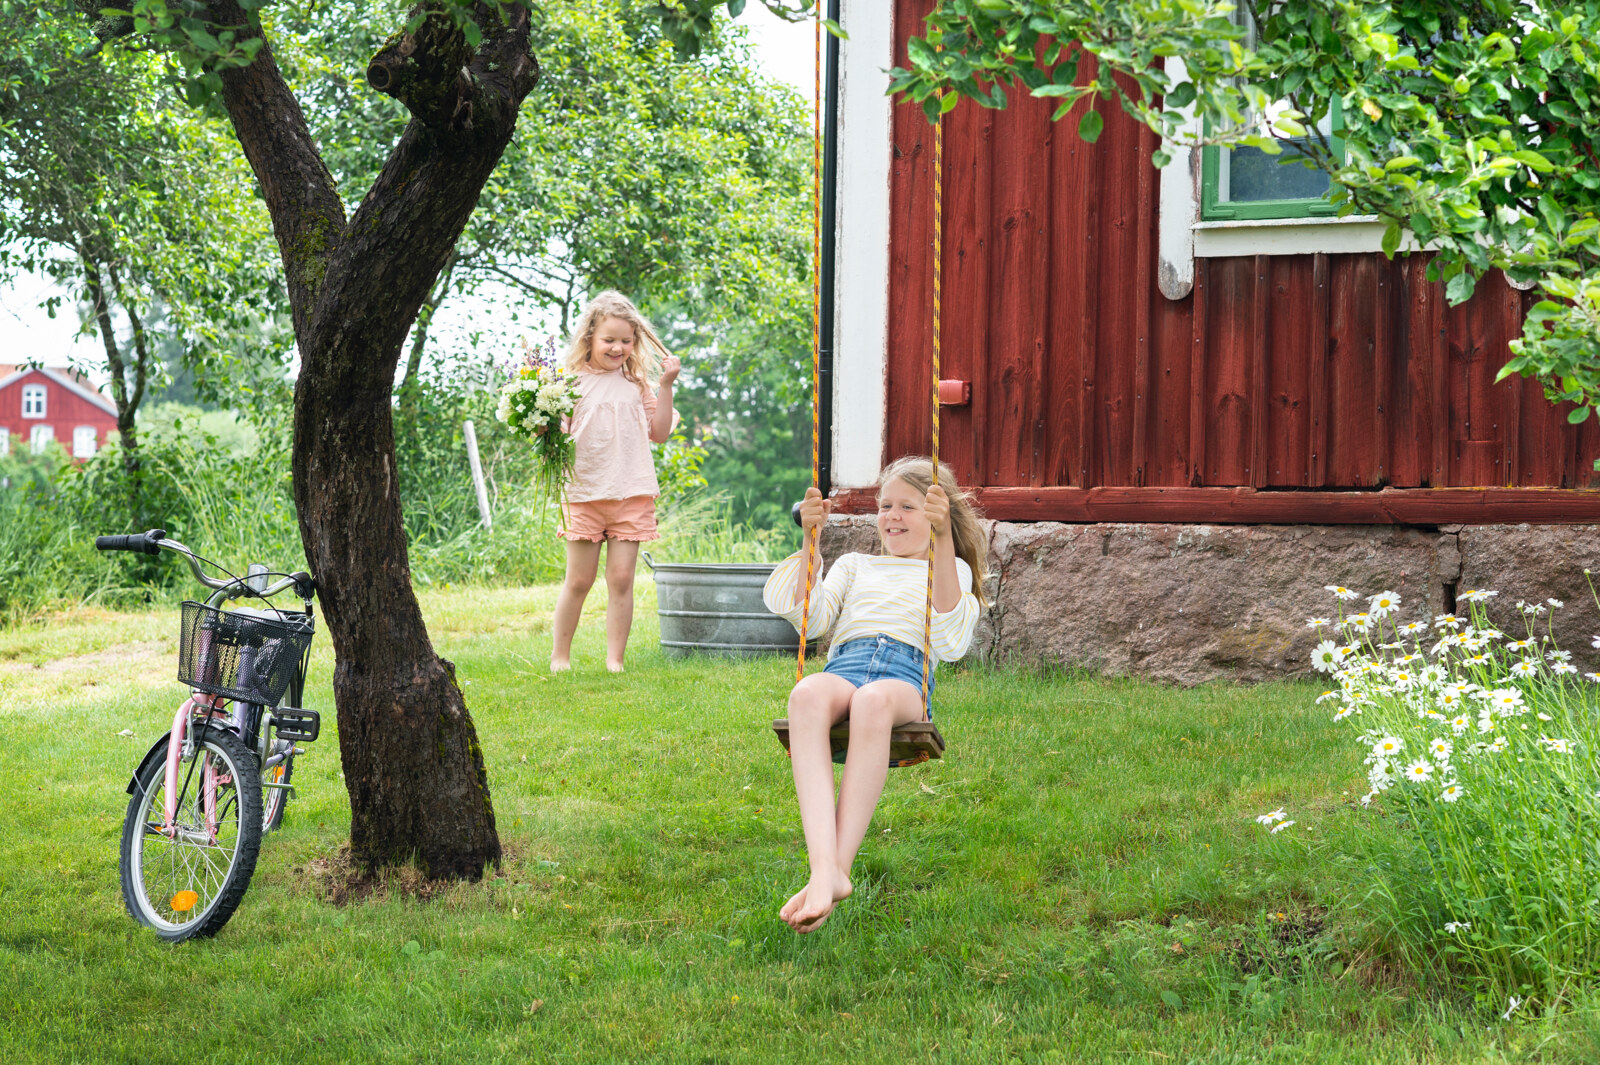 Children playing in the garden. - 2